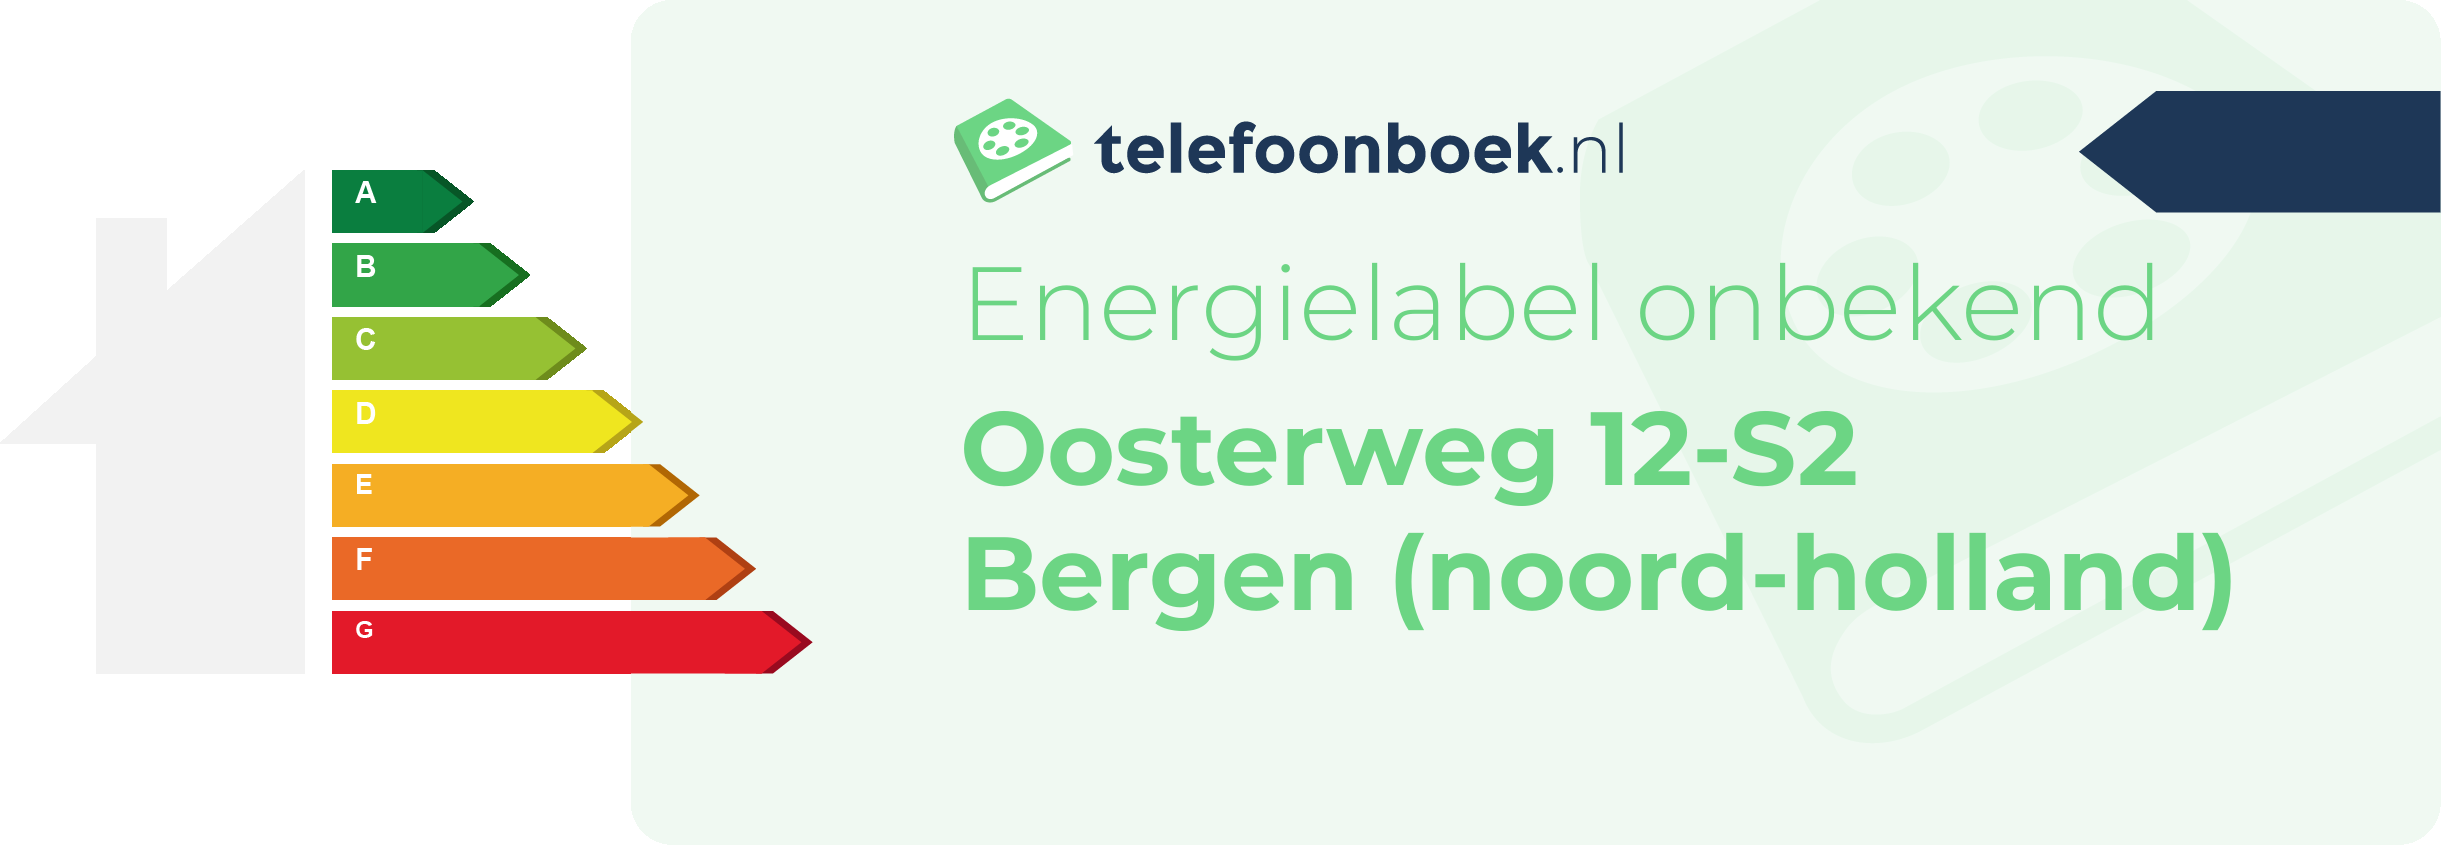 Energielabel Oosterweg 12-S2 Bergen (Noord-Holland)